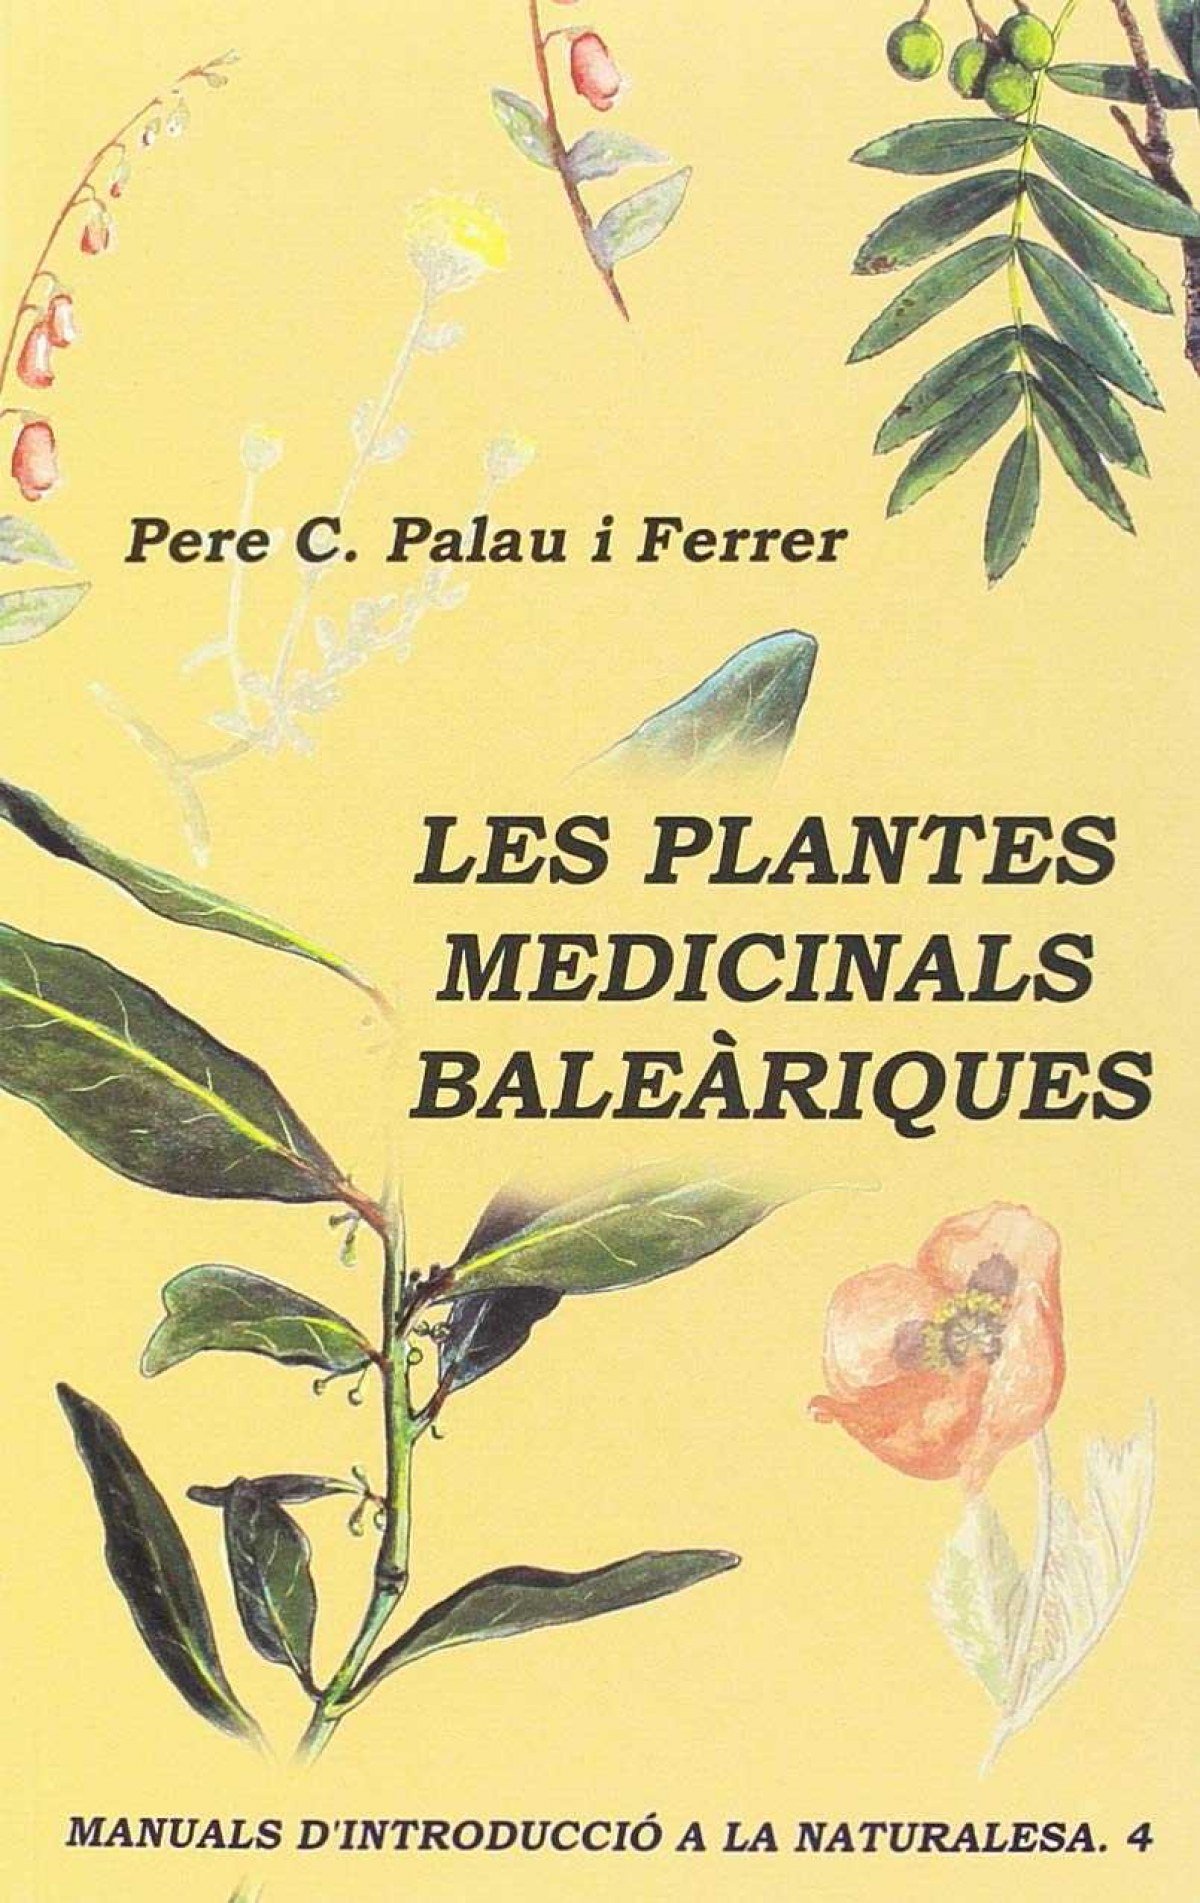 Les plantes medicinals baleàriques